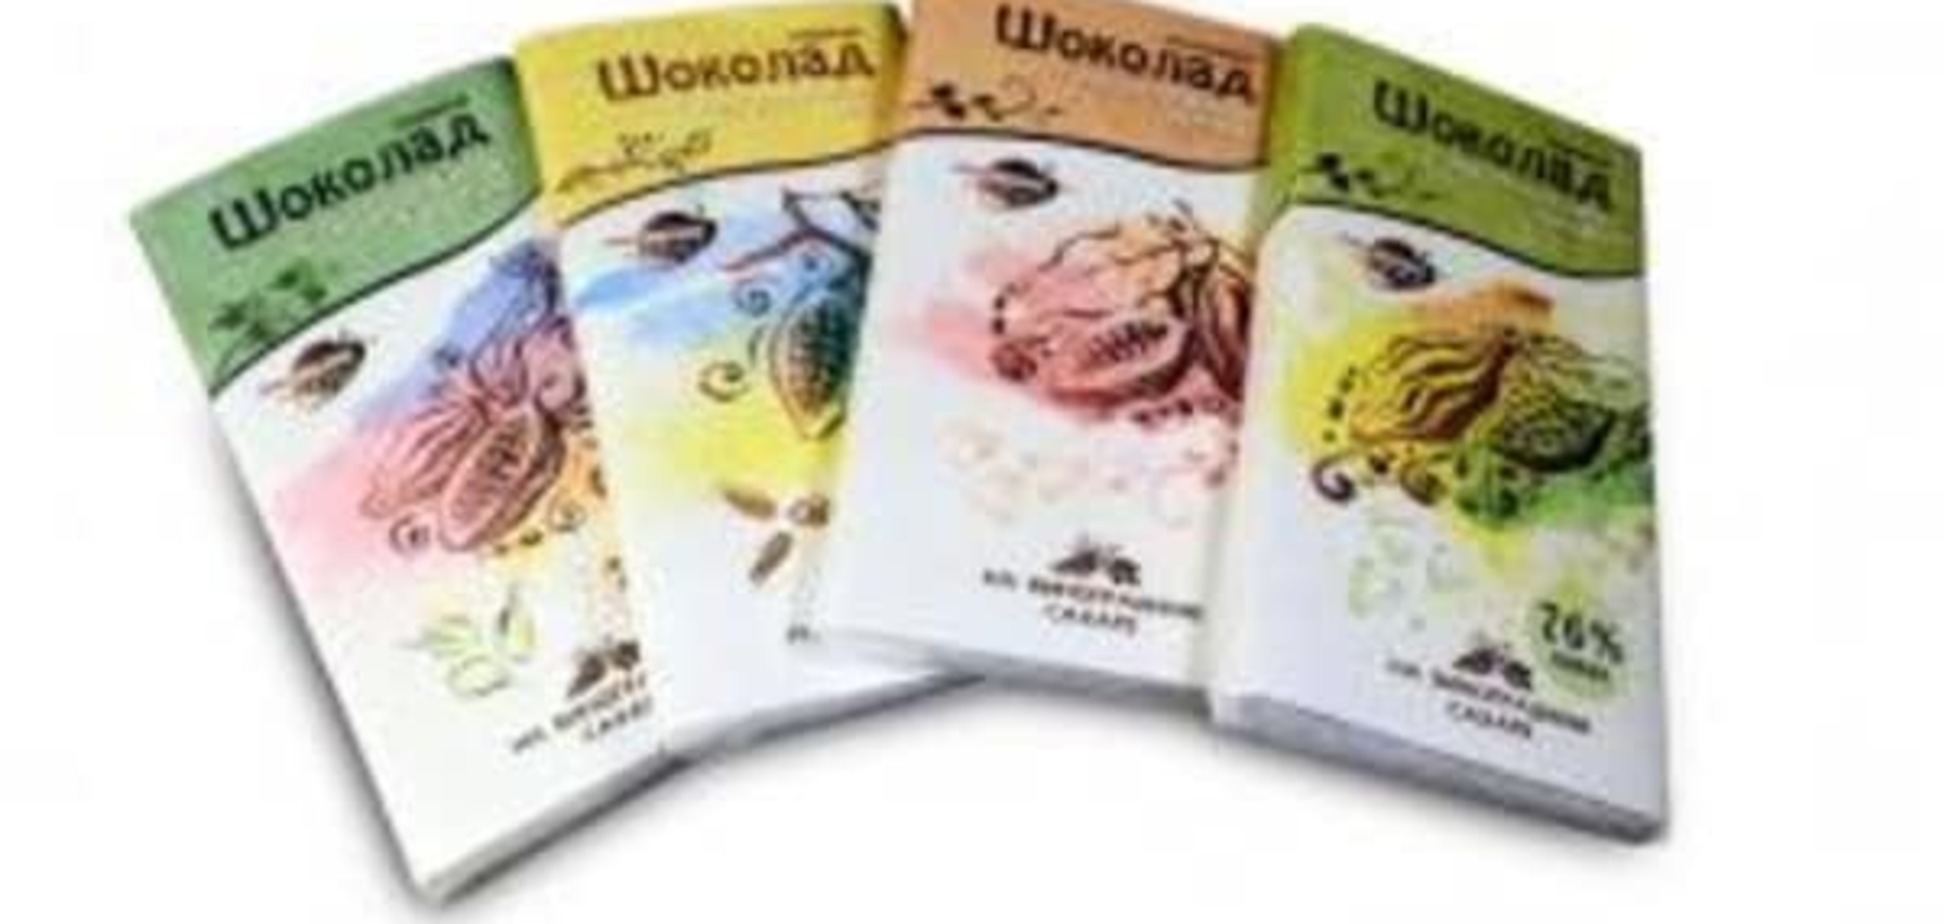 Два в одном: россияне начали выпуск 'здорового' шоколада с коноплей. Фотофакт